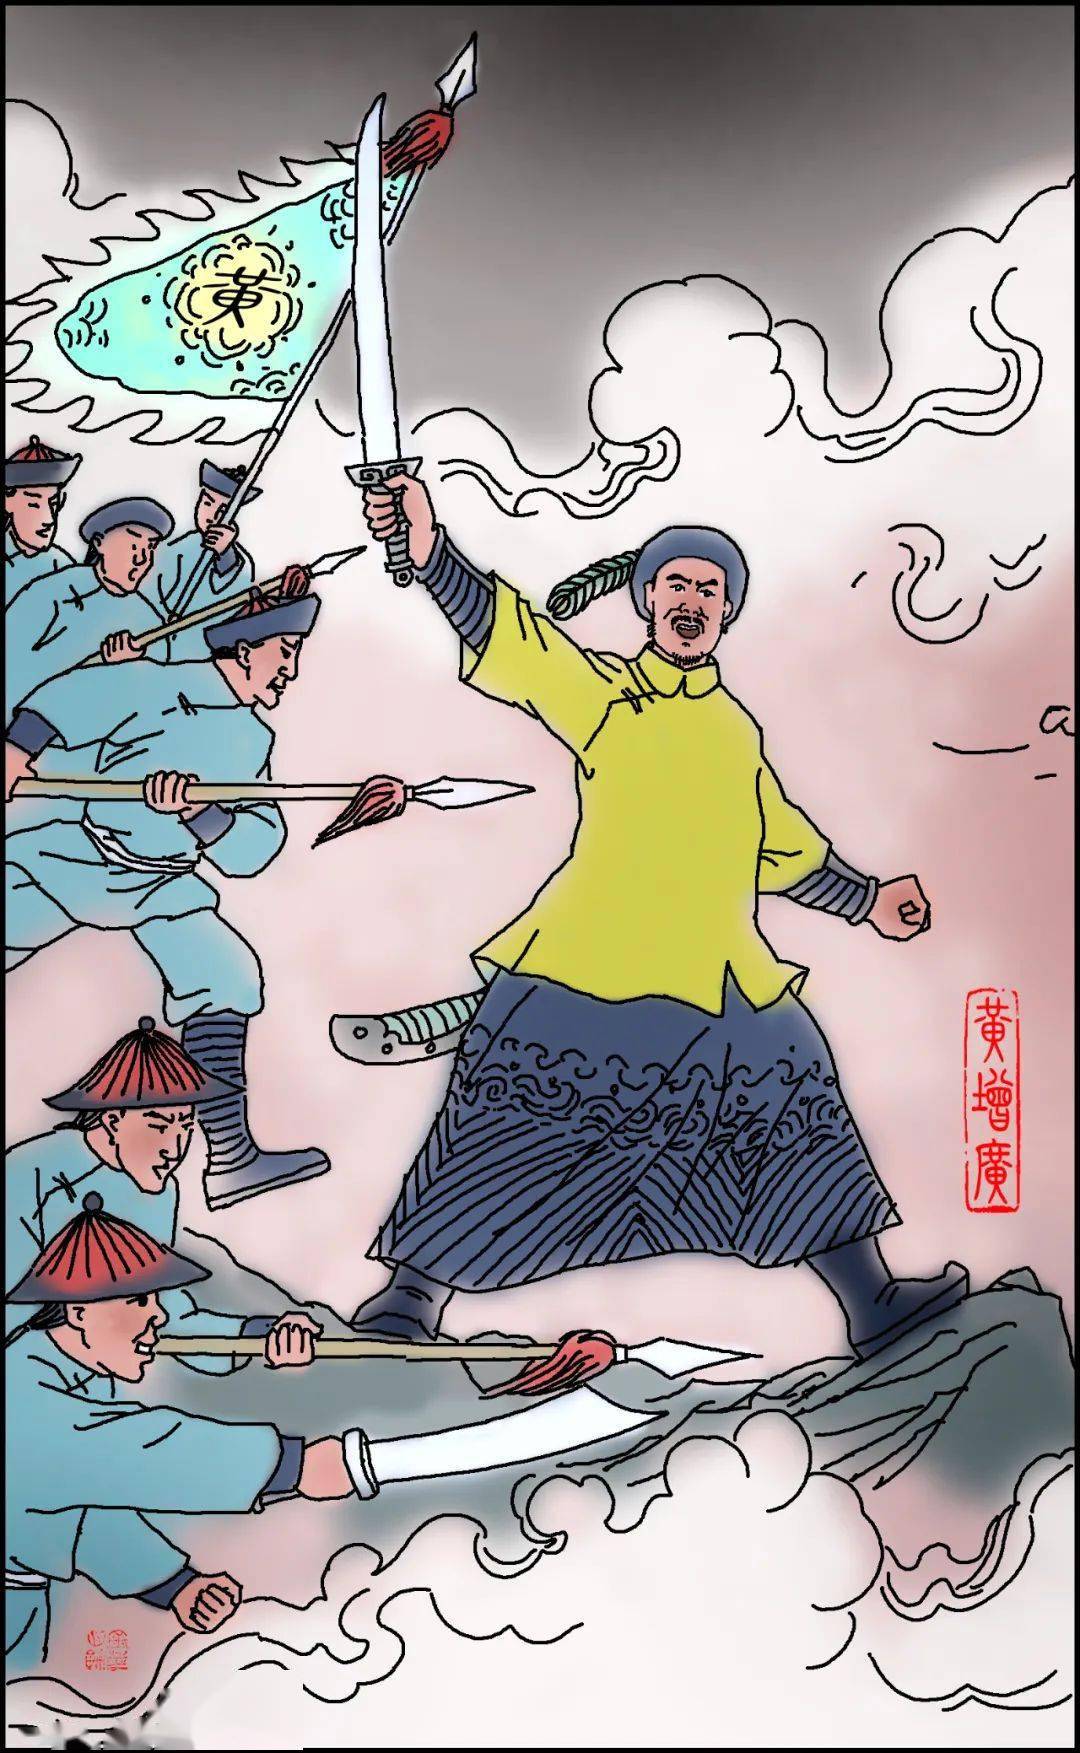 清咸丰初年(1851—1855年),洪秀全定都南京,命部将率师沿江西,安徽向